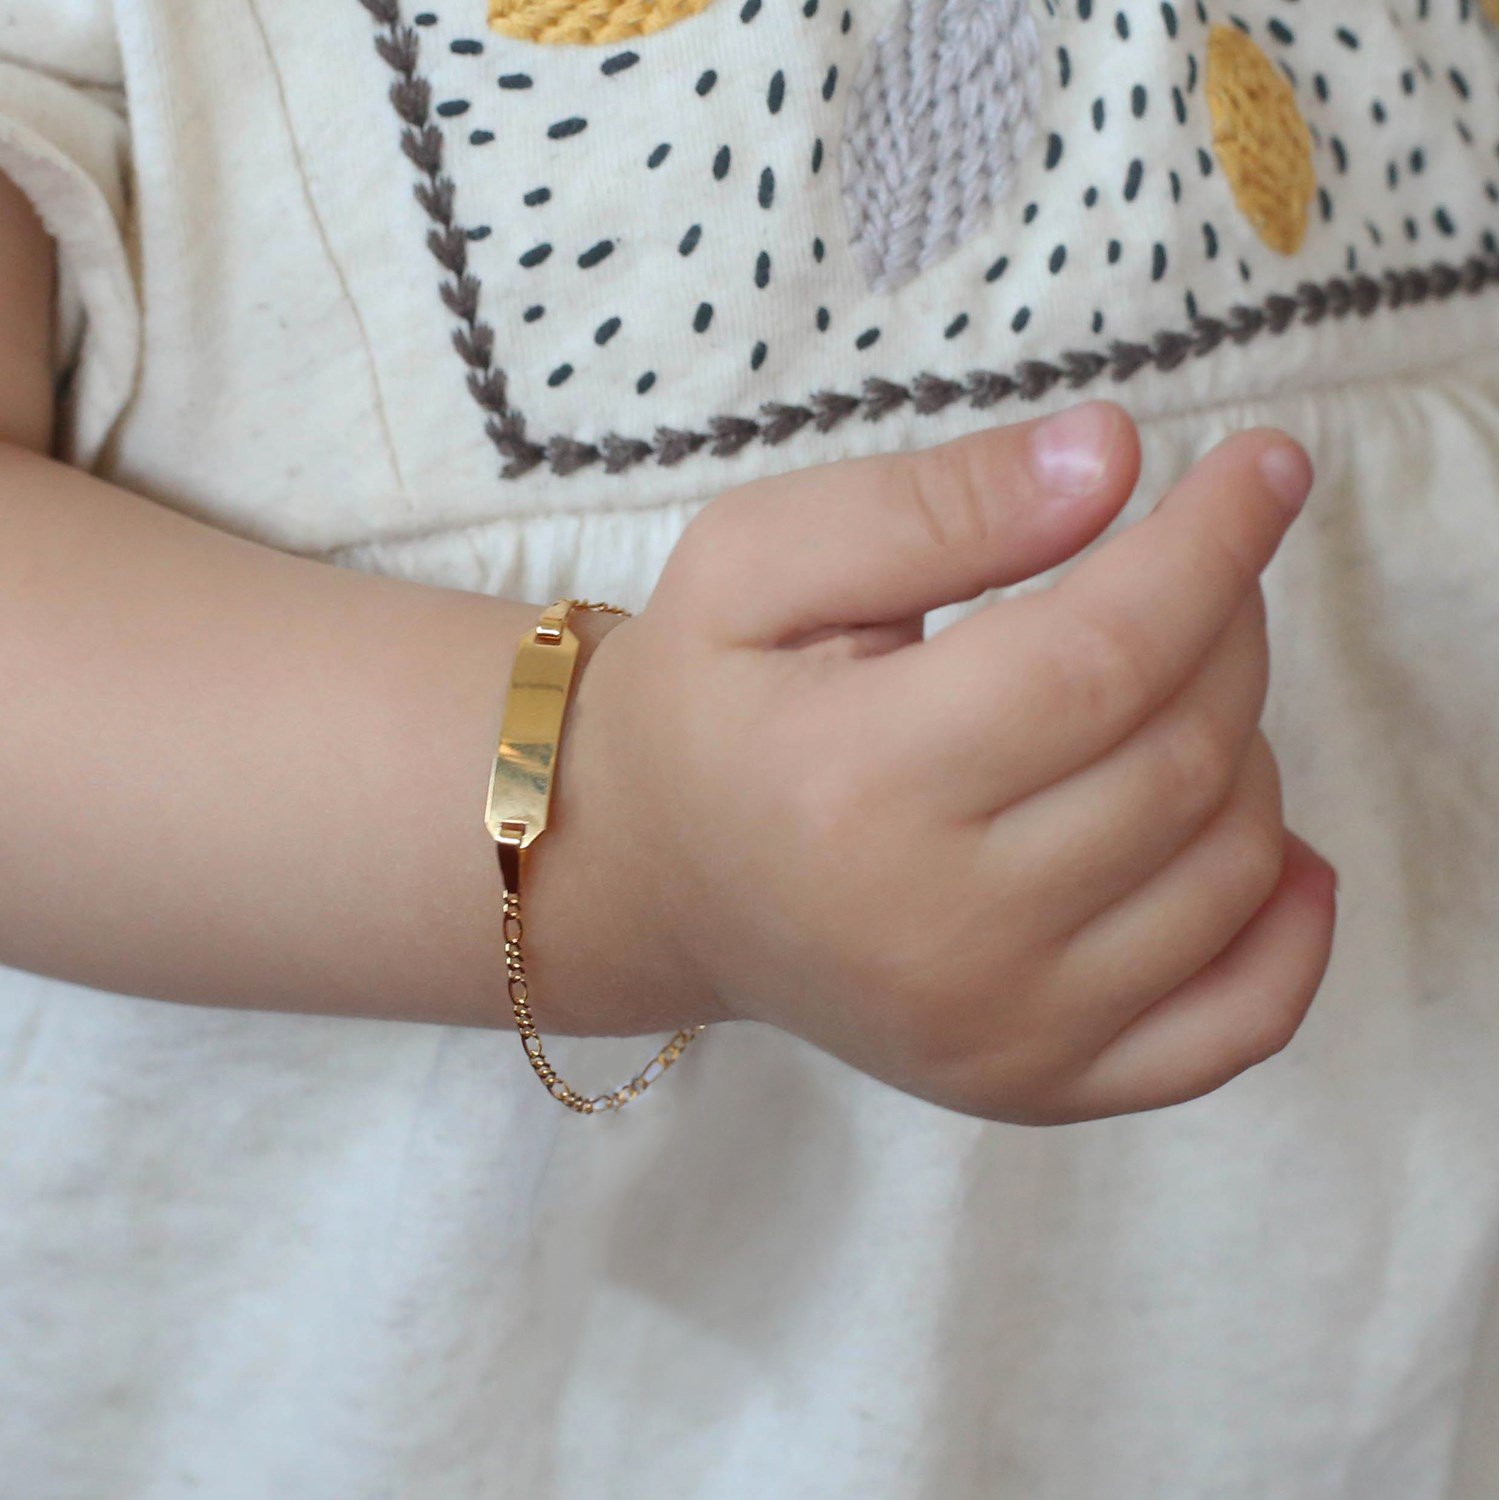 revolutie lof Luik Kinderarmband | Shop armbanden voor kinderen op Lucardi.be